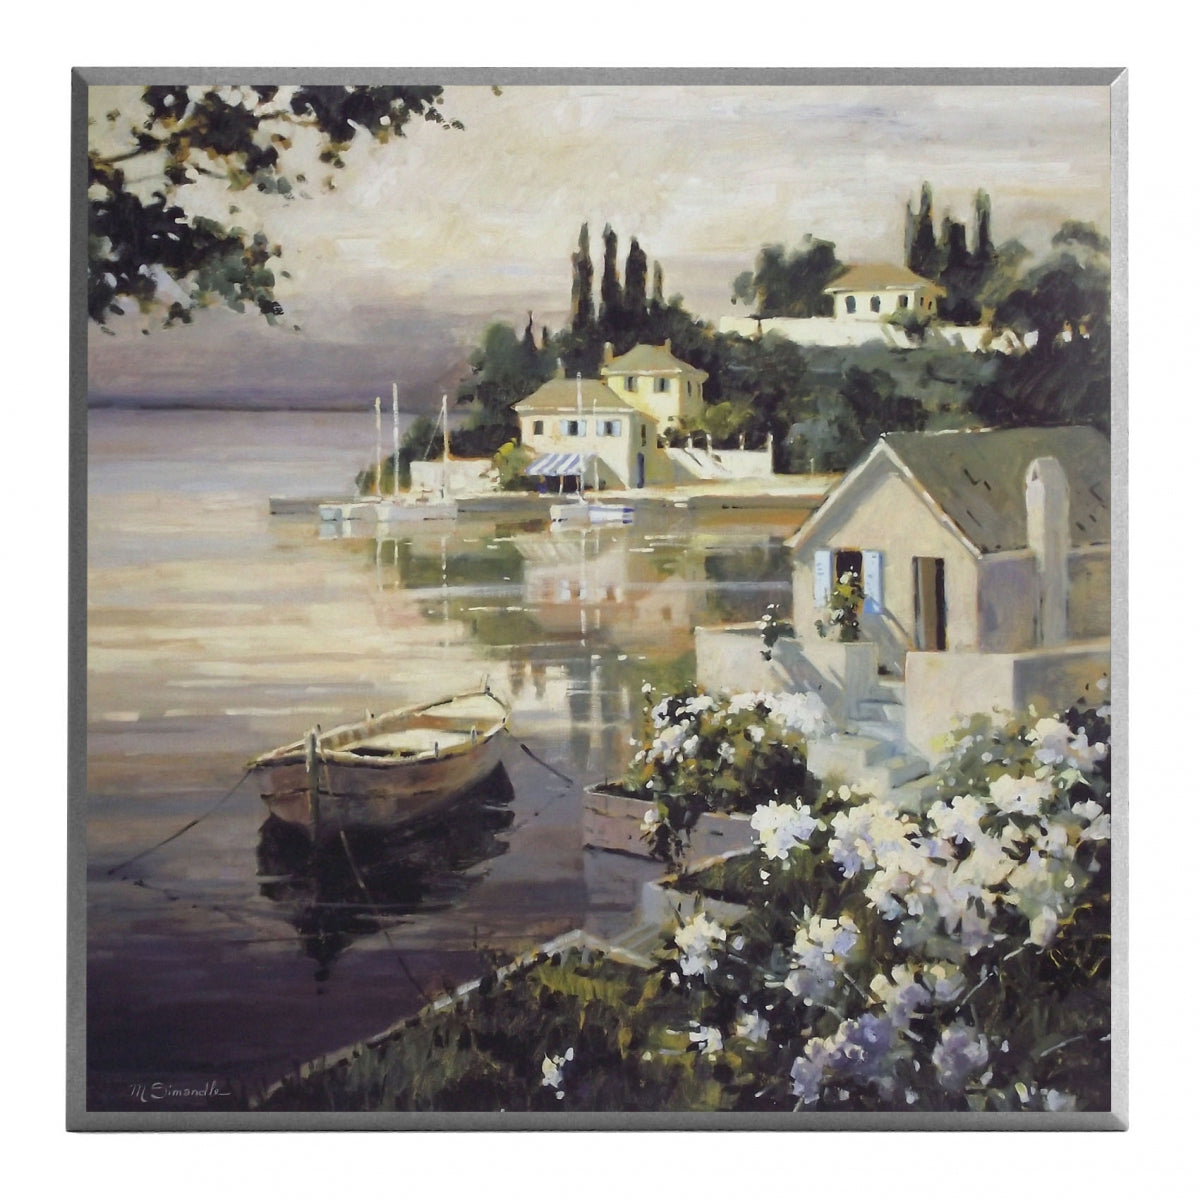 Obraz - Pejzaż z łódką na jeziorze - Decograph A2607EX 51x51 cm - Obrazy Reprodukcje Ramy | ergopaul.pl